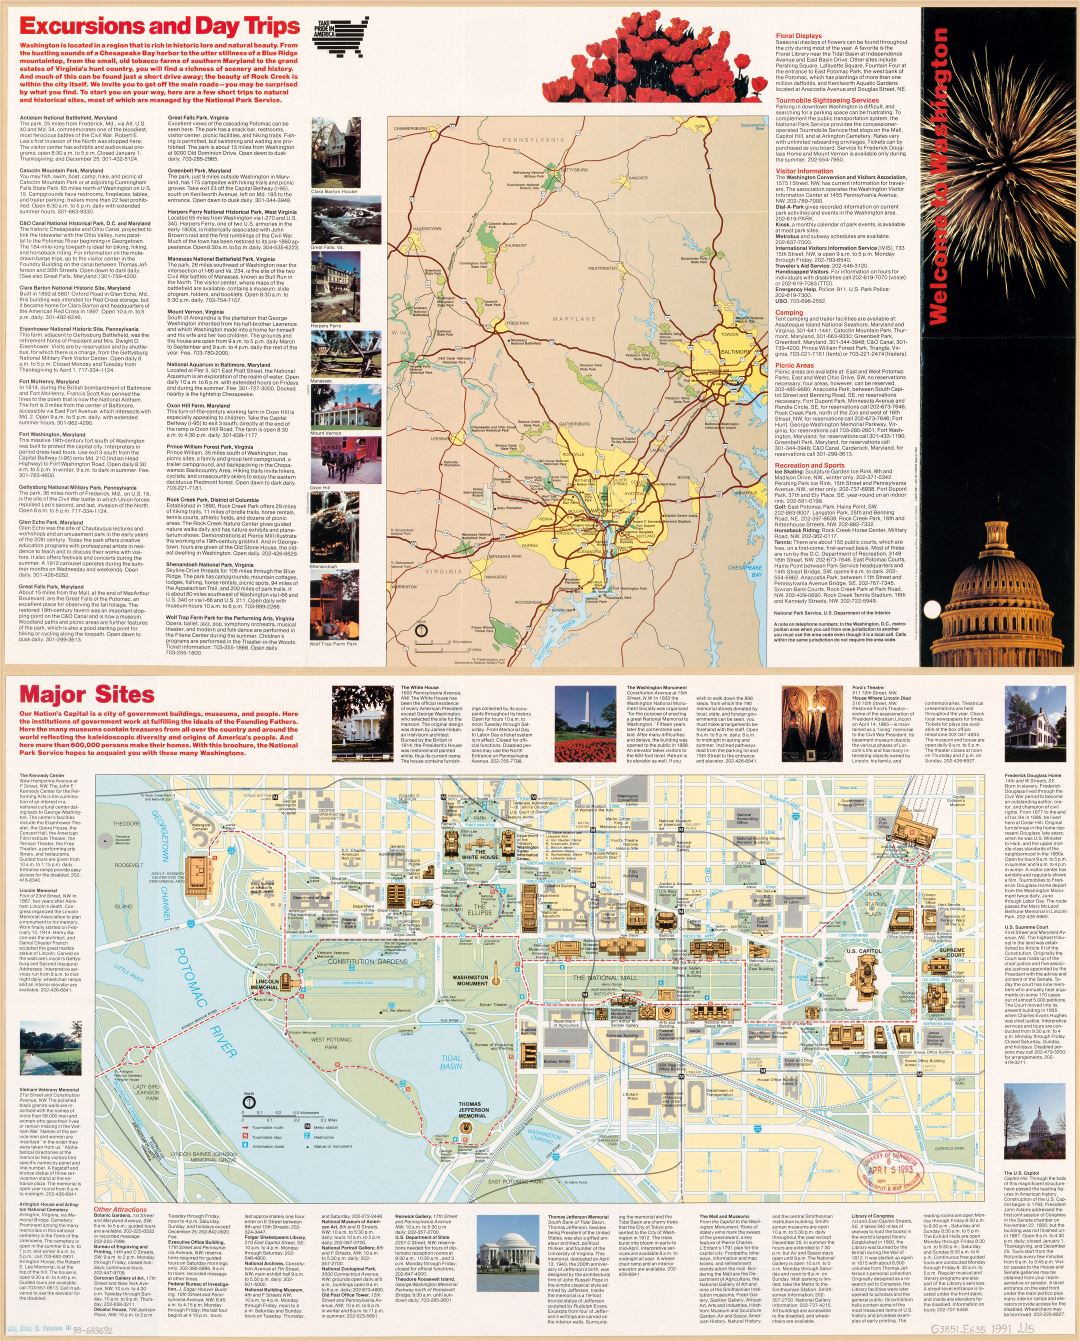 Large scale detailed Washington D.C. tourist map - 1991